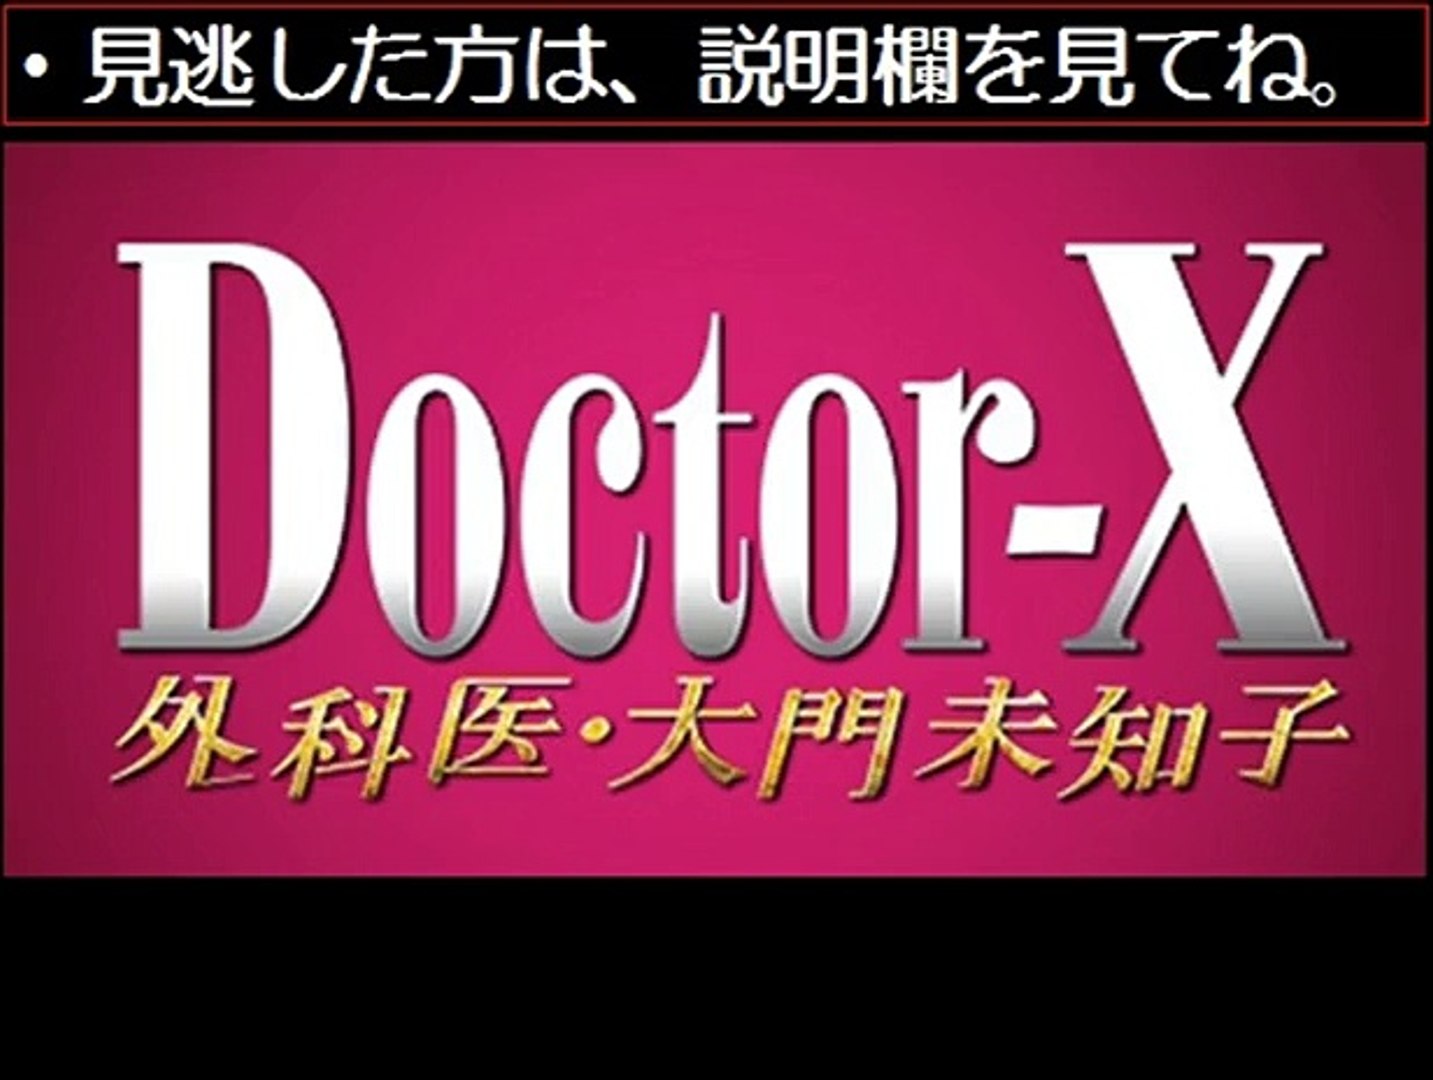 ドクターx3 討論番組に出演 第4話 12 11 12月11日 ドラマ無料動画 動画 Dailymotion